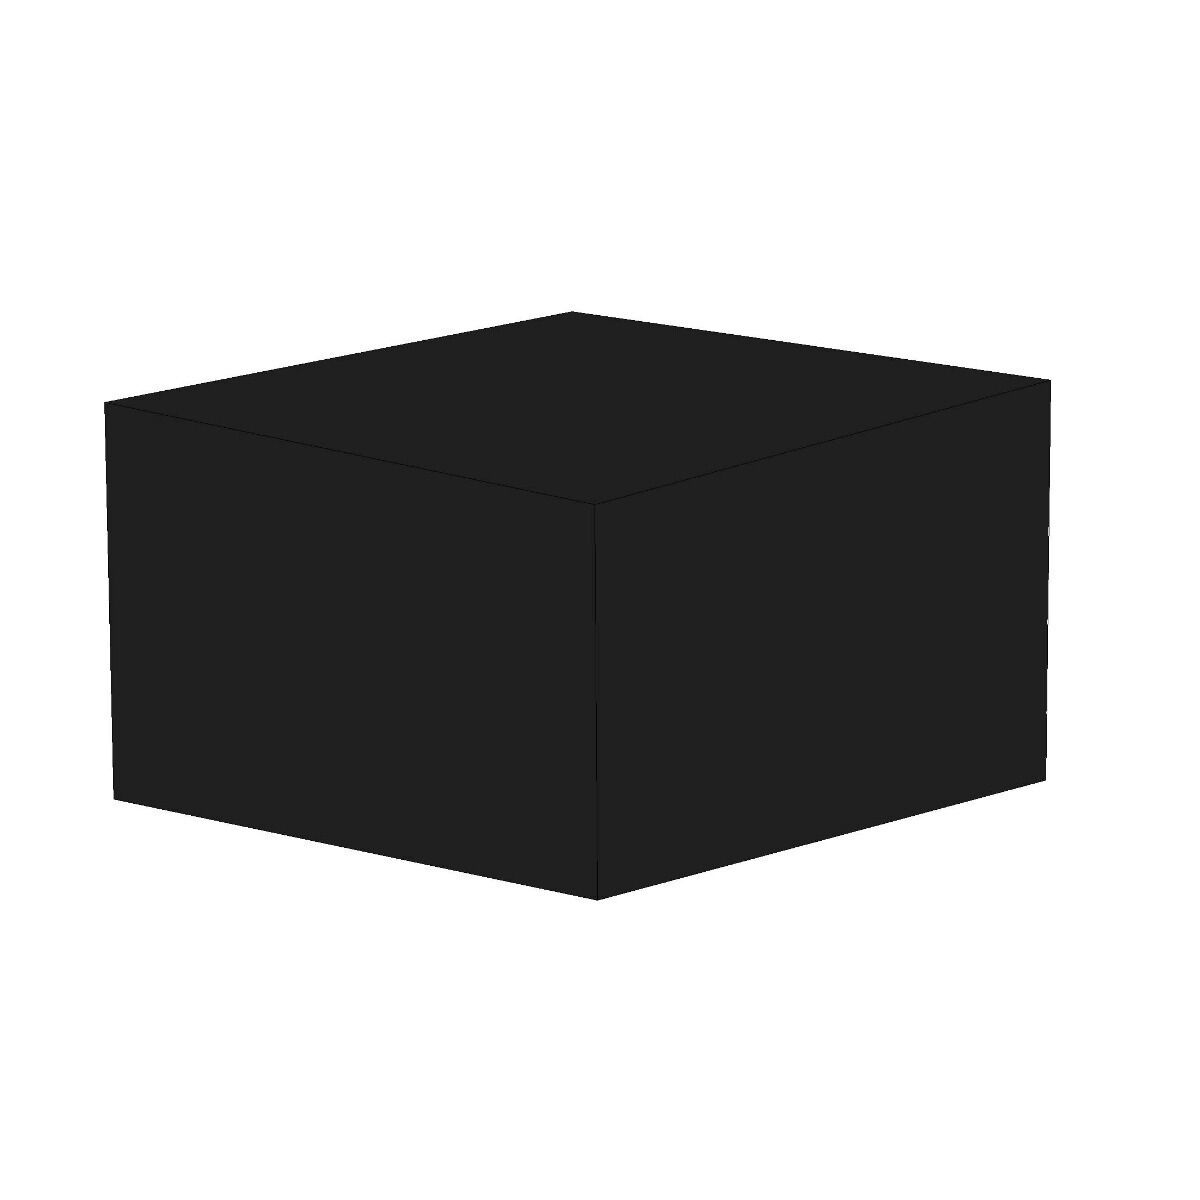 cov-4seat-cube-sq3.jpg